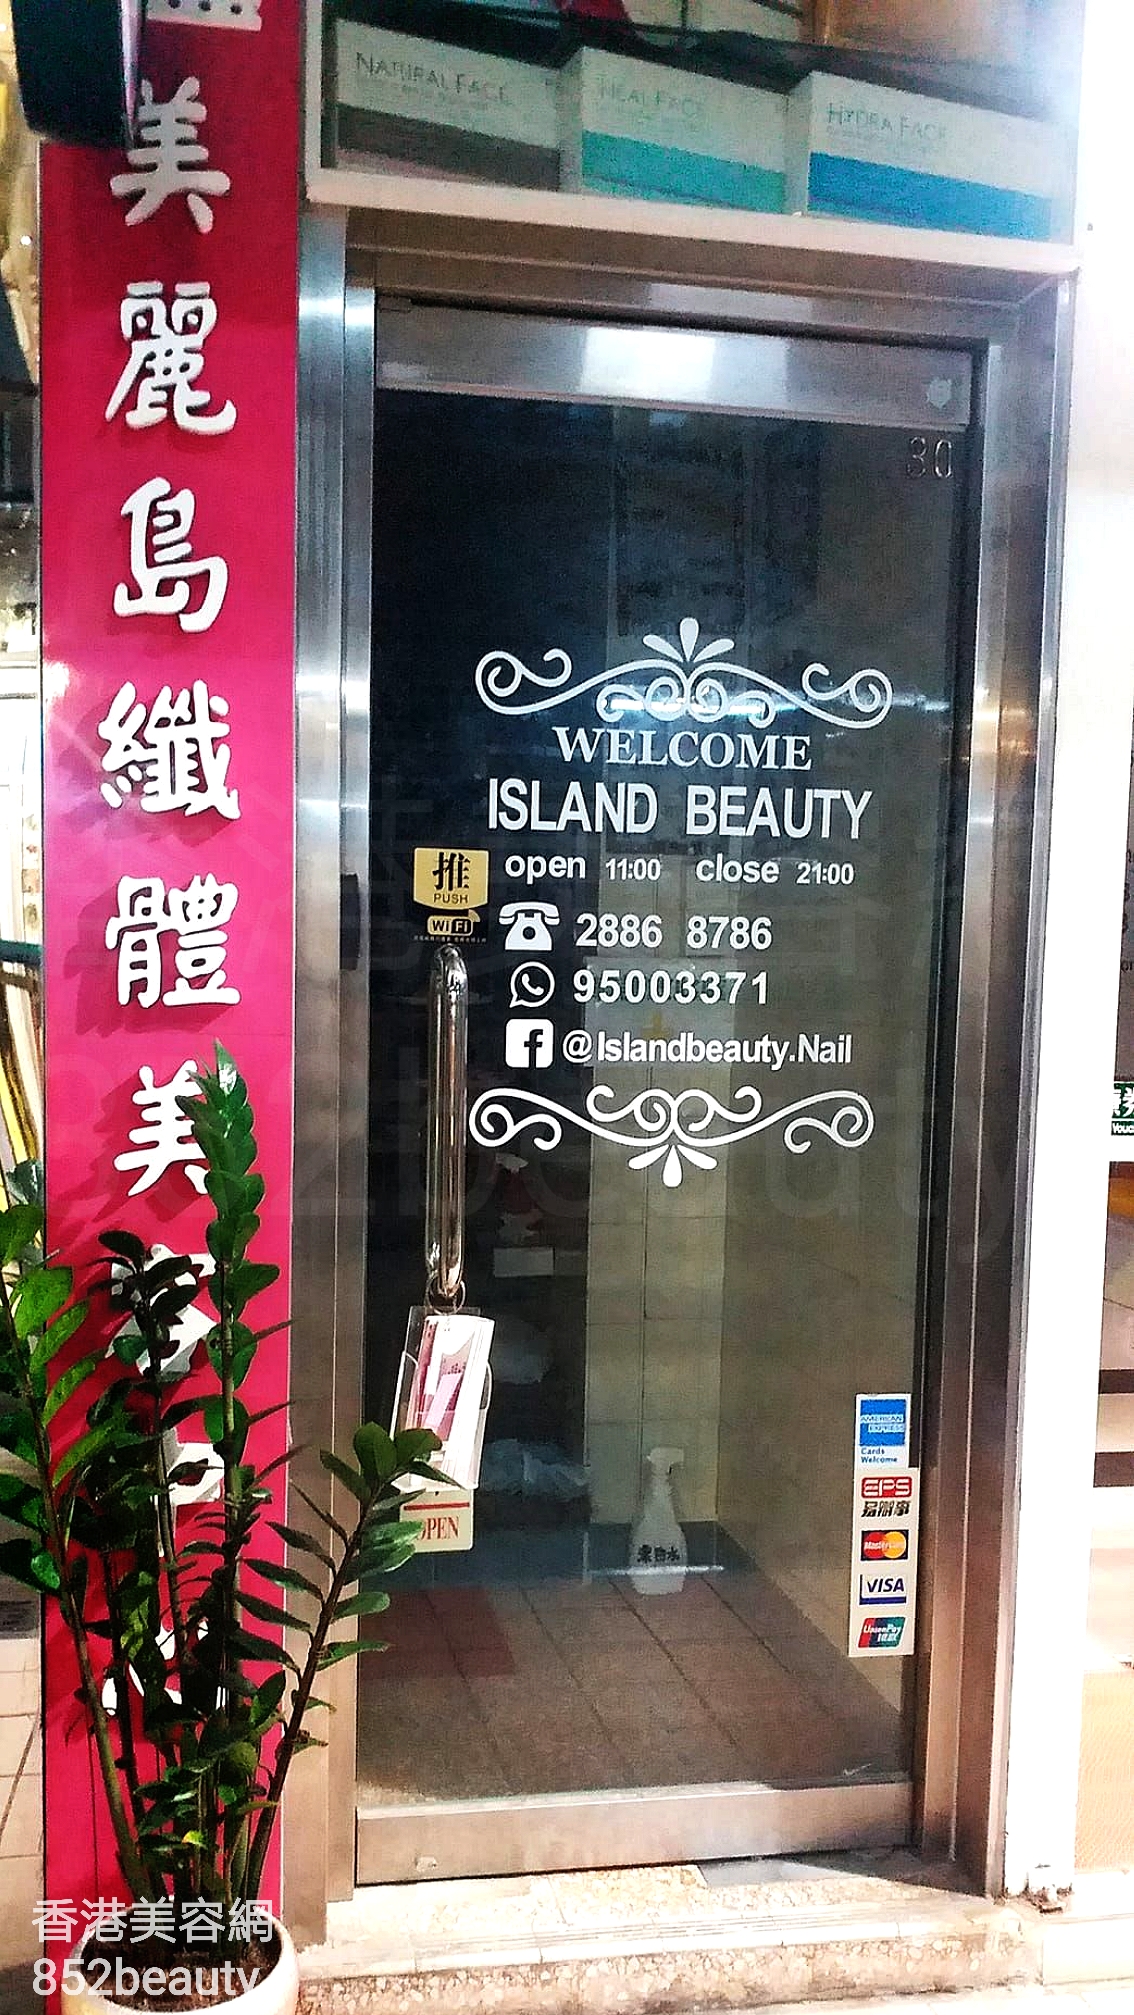 美容院 Beauty Salon: Island Beauty 美麗鳥纖體美容中心